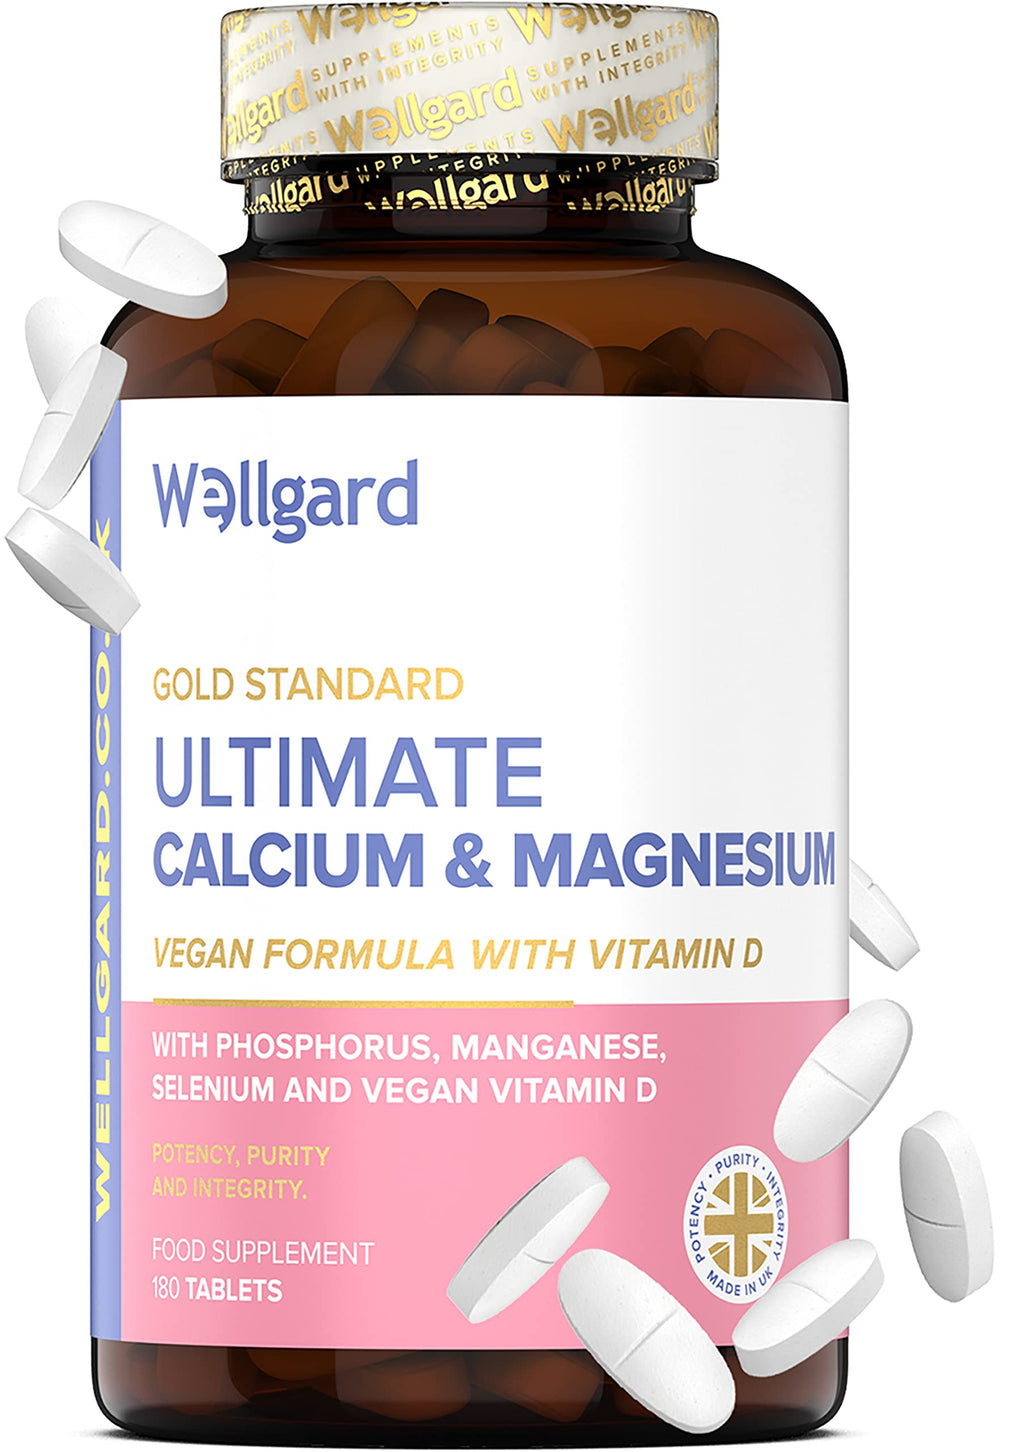 [Australia] - Vegan Calcium Magnesium Zinc and Vitamin D Capsules by Wellgard - Calcium Supplement, Calcium Tablets with Phosphorus, Manganese, Selenium, Copper, Made in UK 